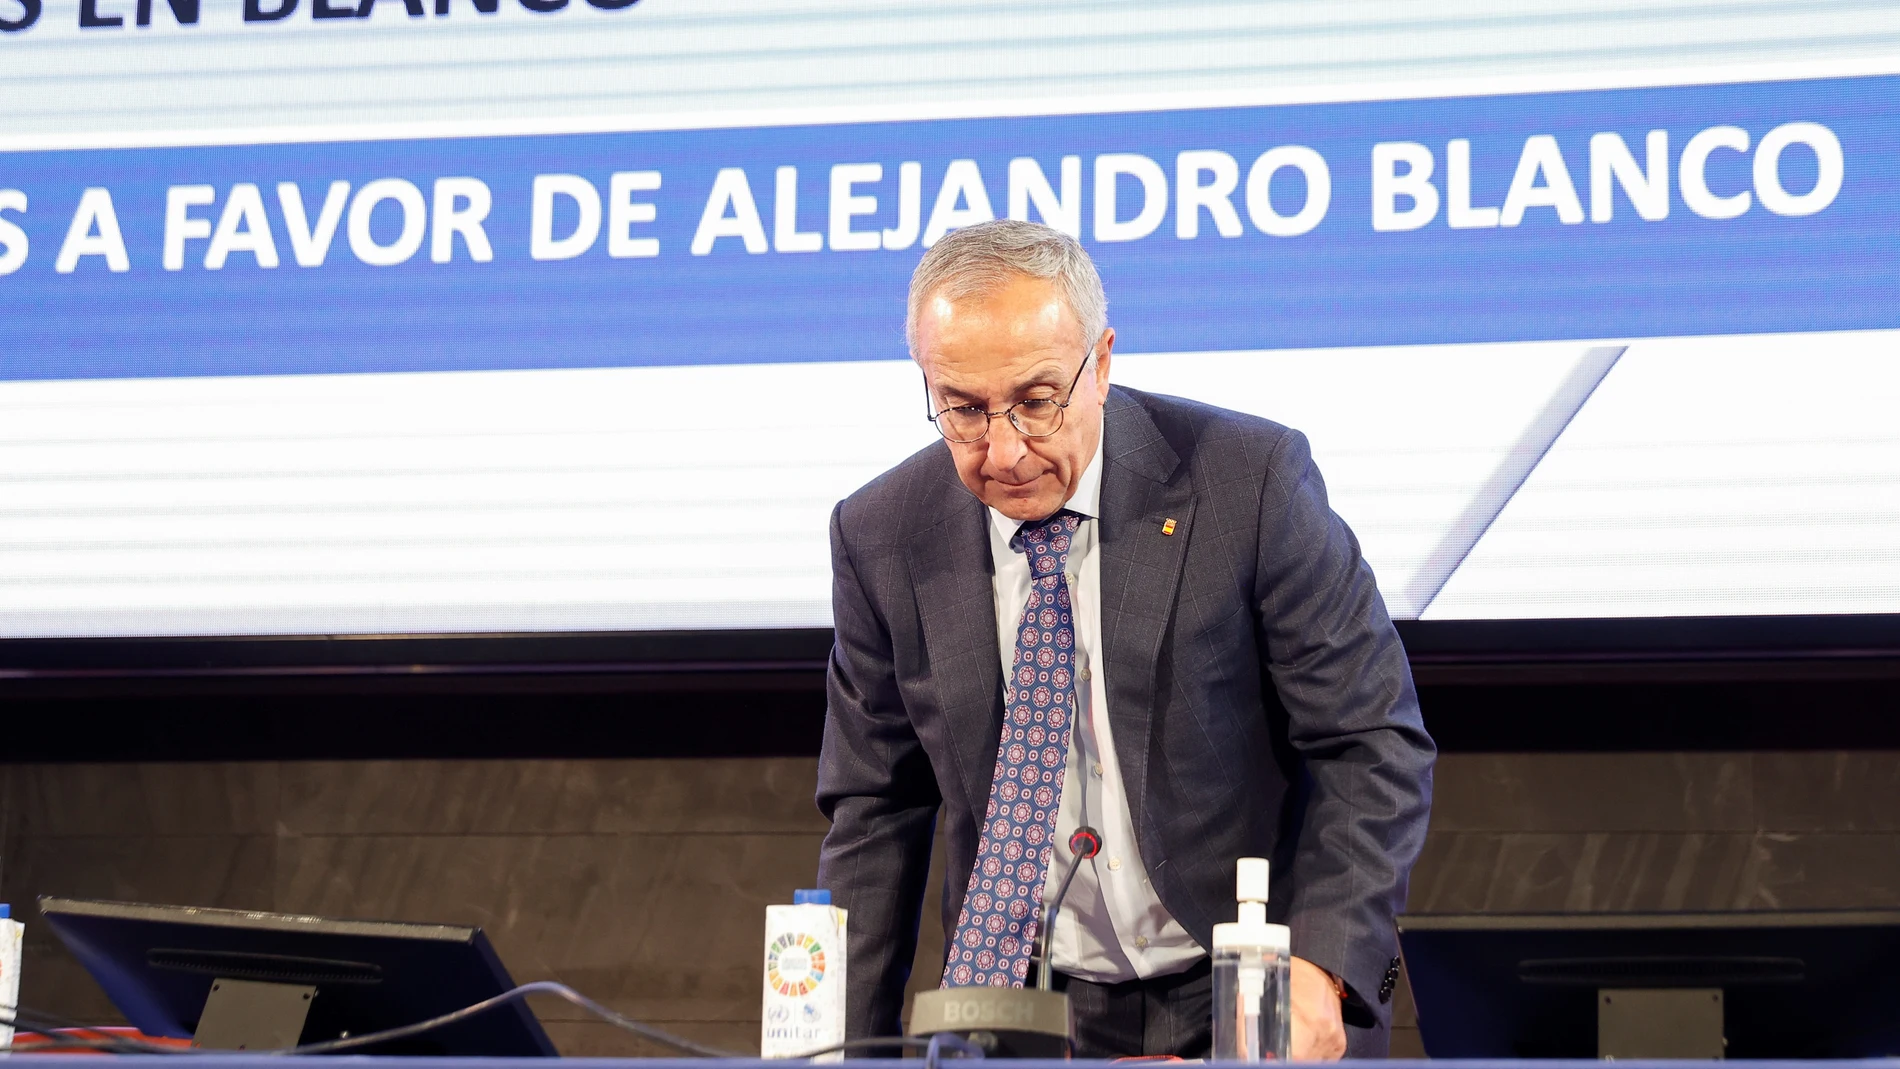 El presidente del Comité Olímpico Español (COE), Alejandro Blanco, asiste a la Asamblea General Extraordinaria del COE donde será reelegido como presidente al ser el único candidato